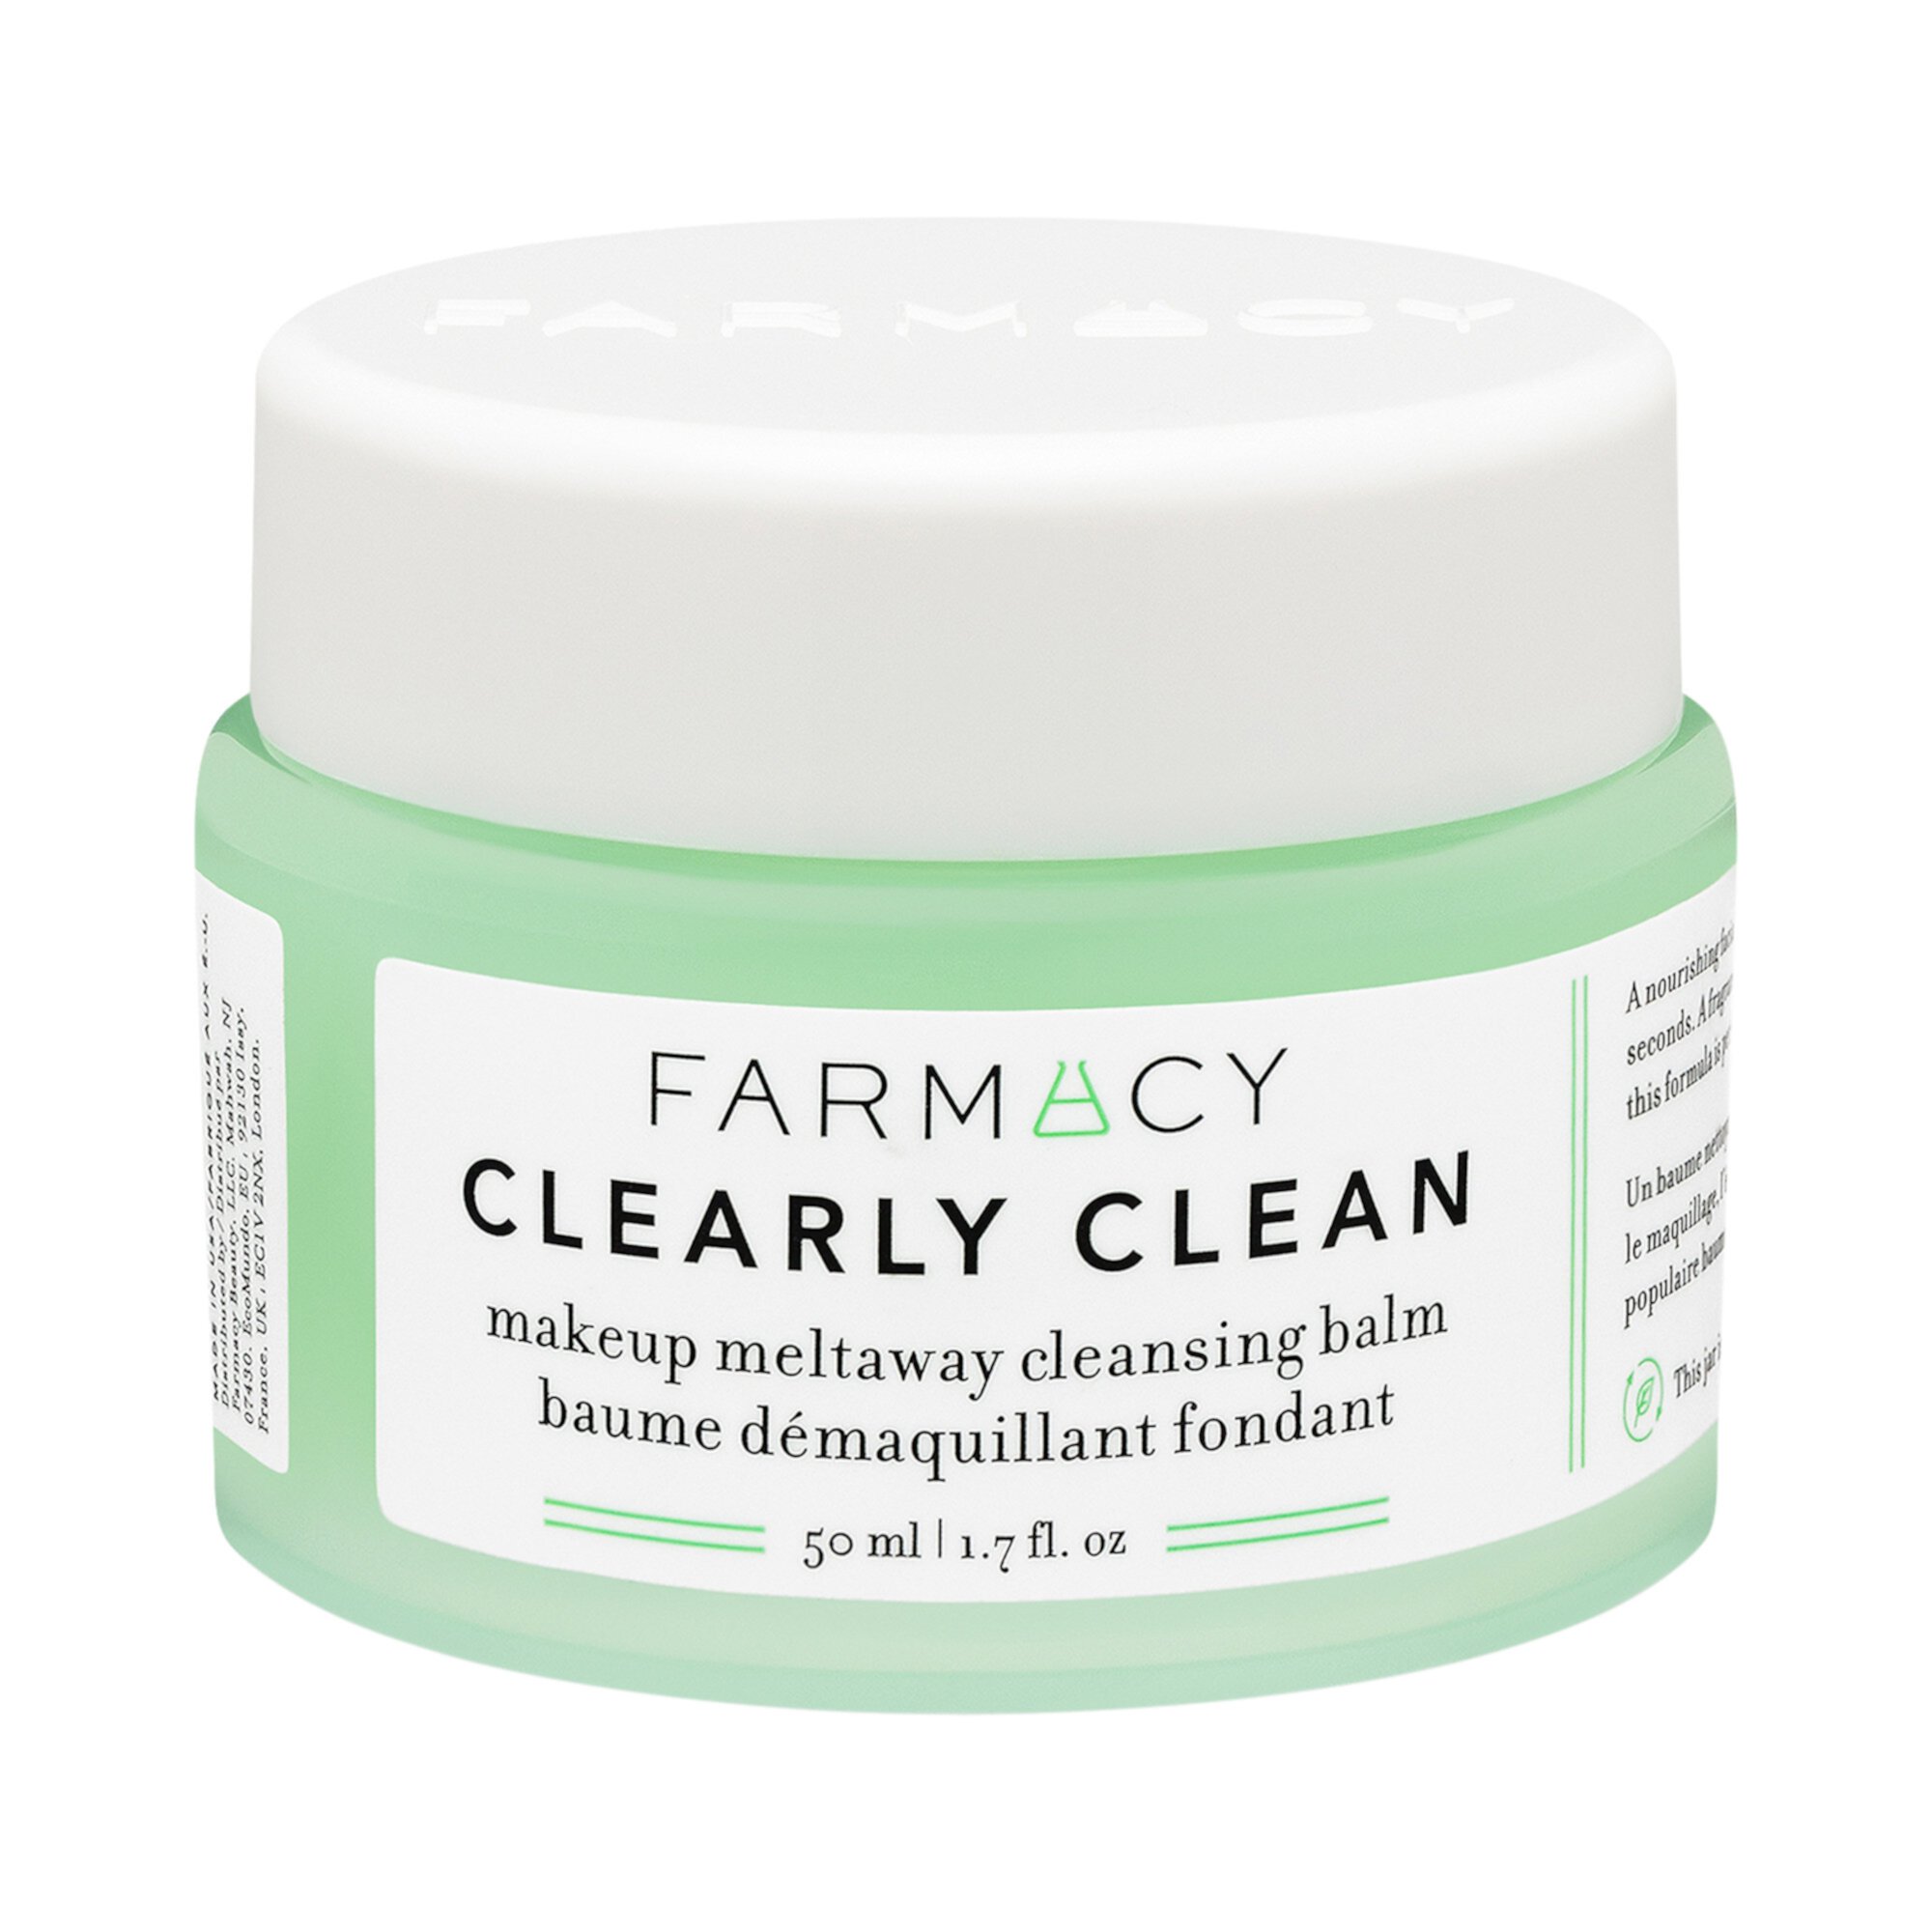 Очищающий бальзам для снятия макияжа Clearly Clean Farmacy